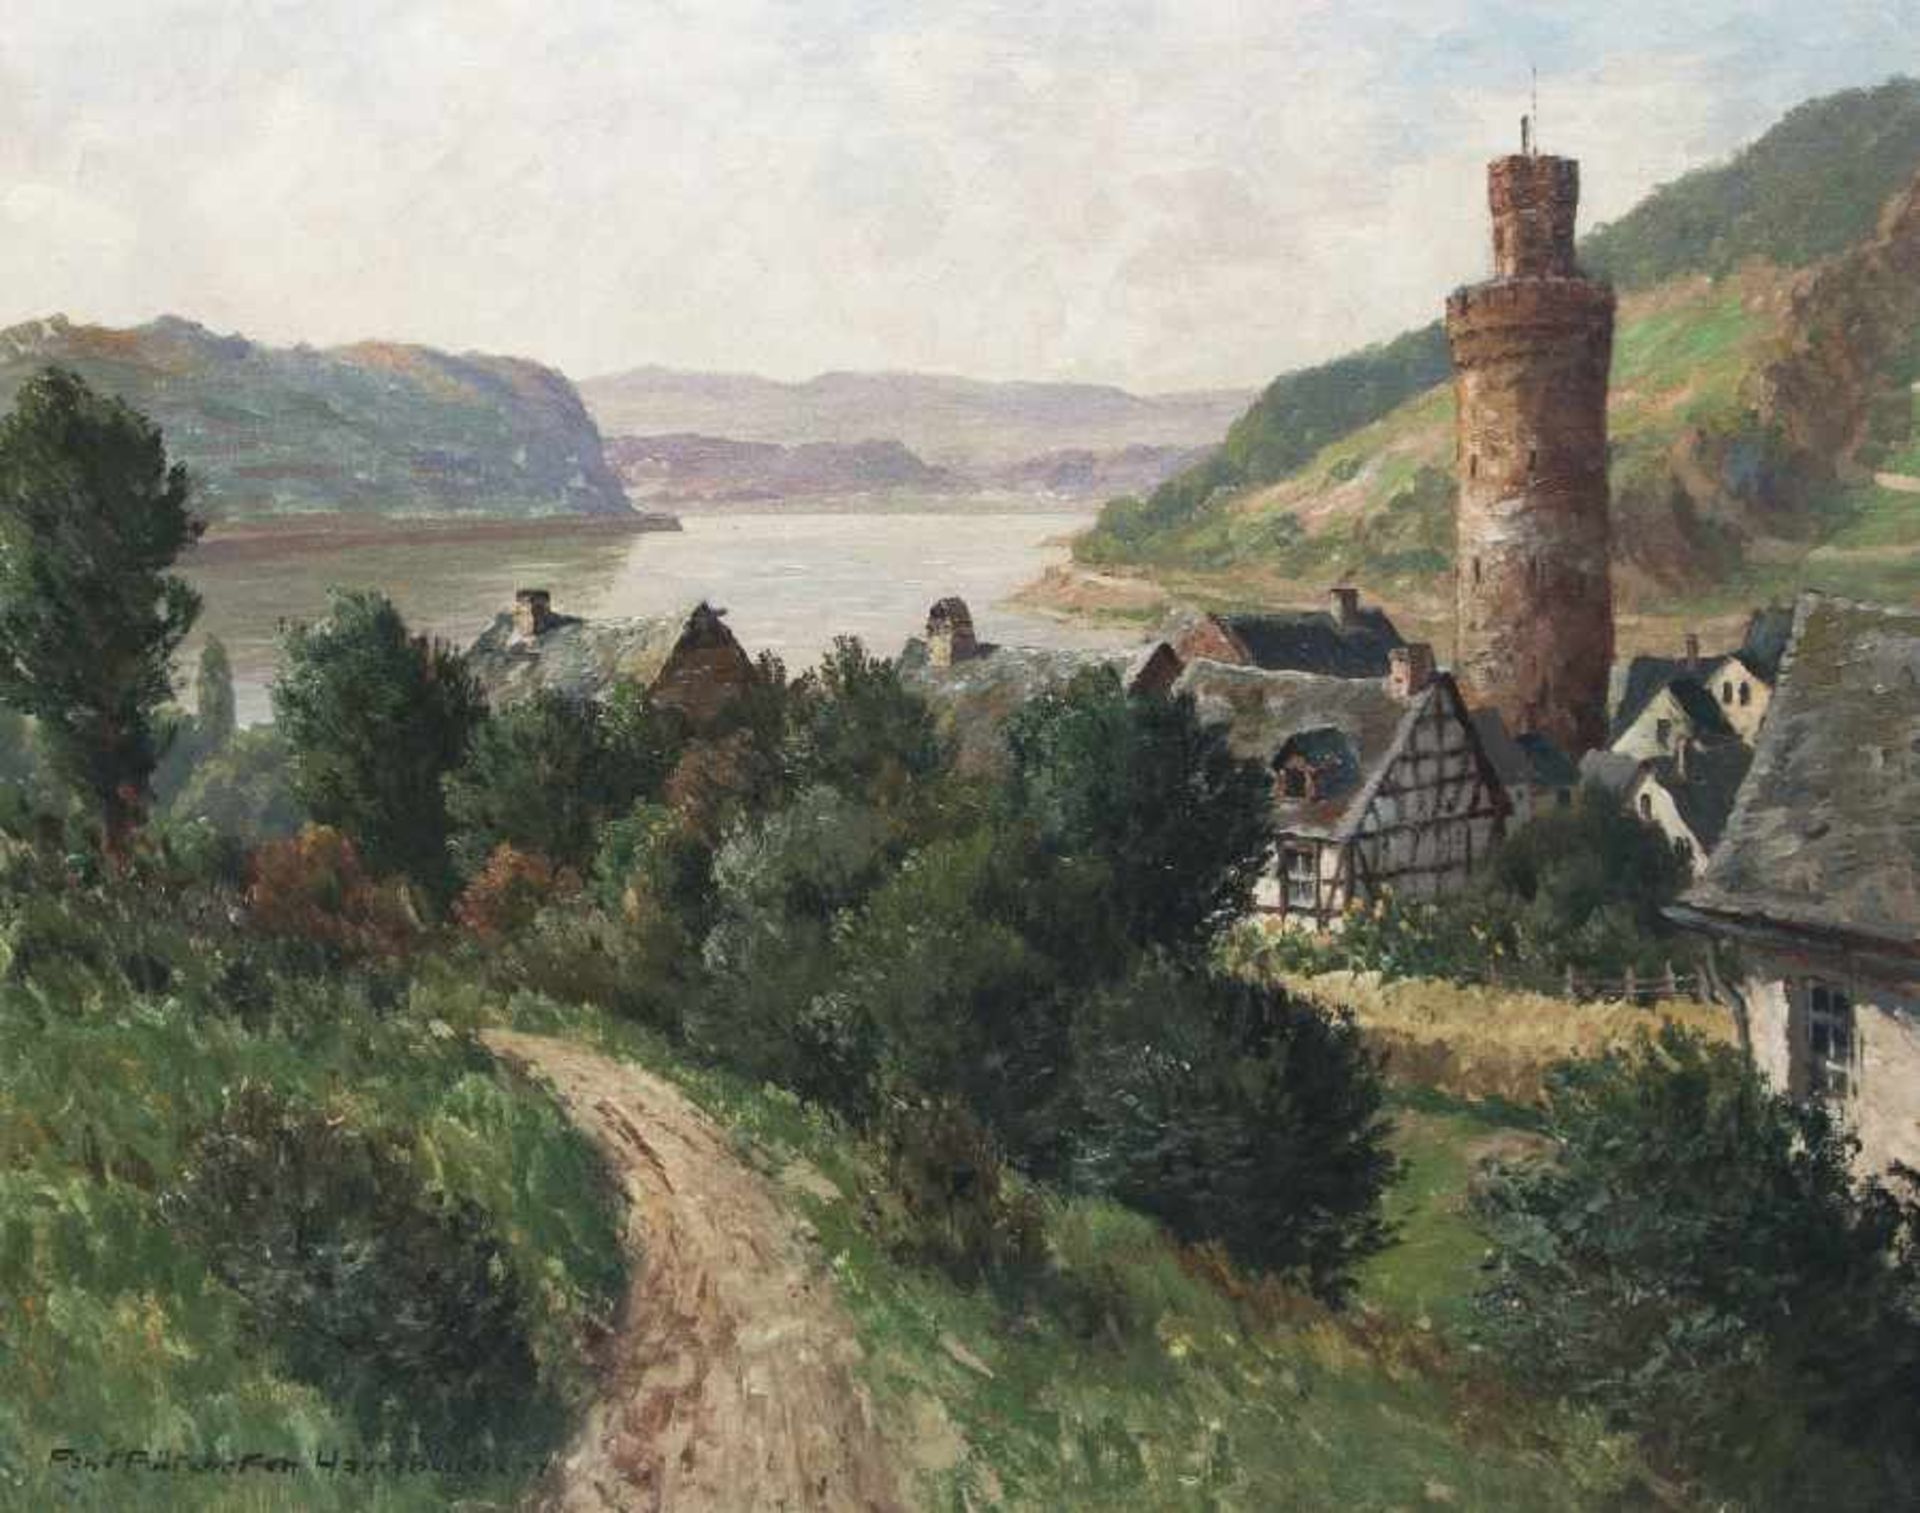 Paul Pützhofen-Hambüchen1879 - 1939Am Ochsenturm in Oberwesel am RheinÖl auf Lwd; H 64,5 cm, B 80,